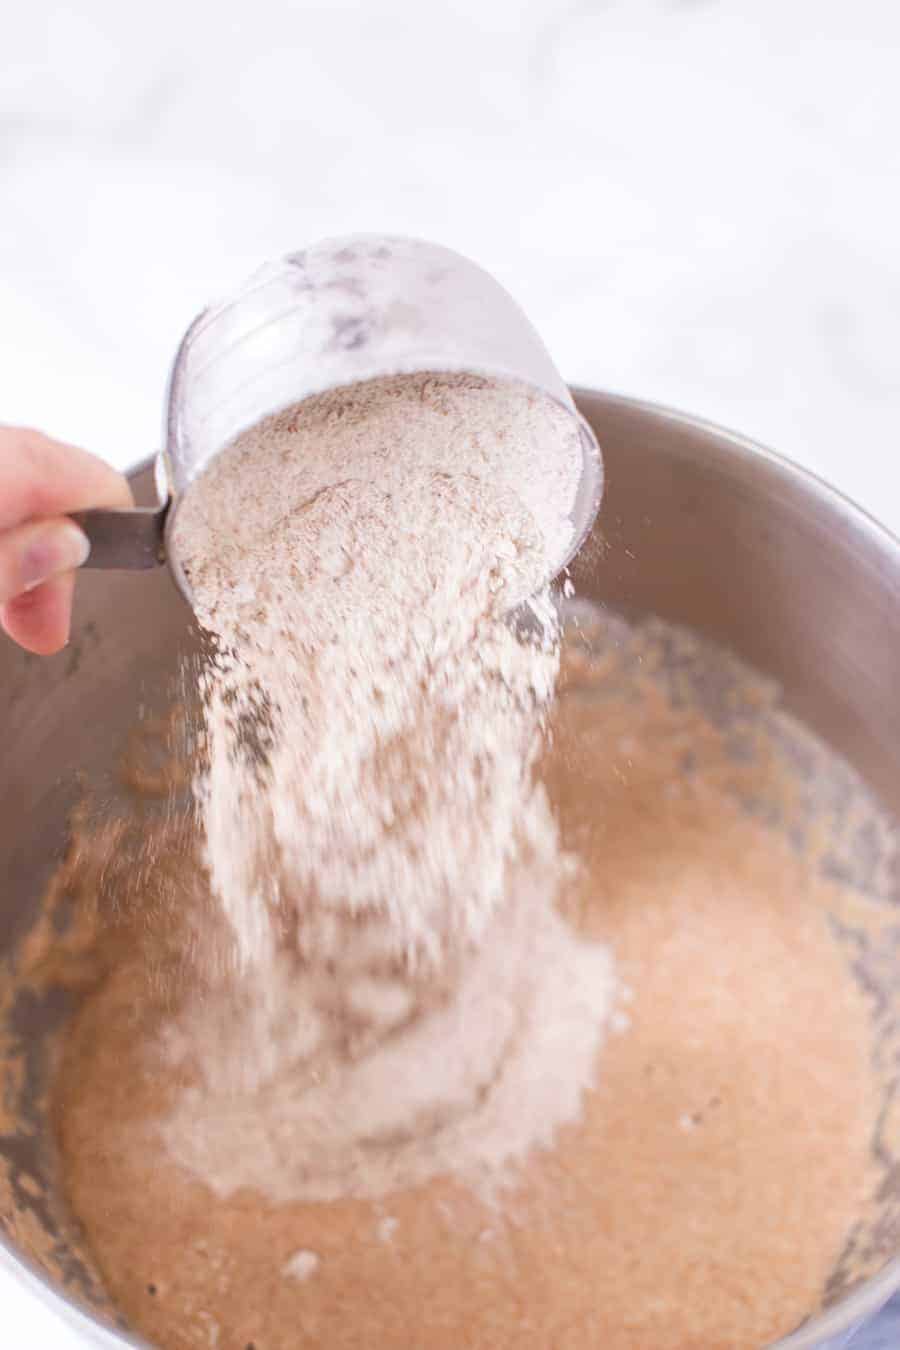 adding flour to bread reciepe.